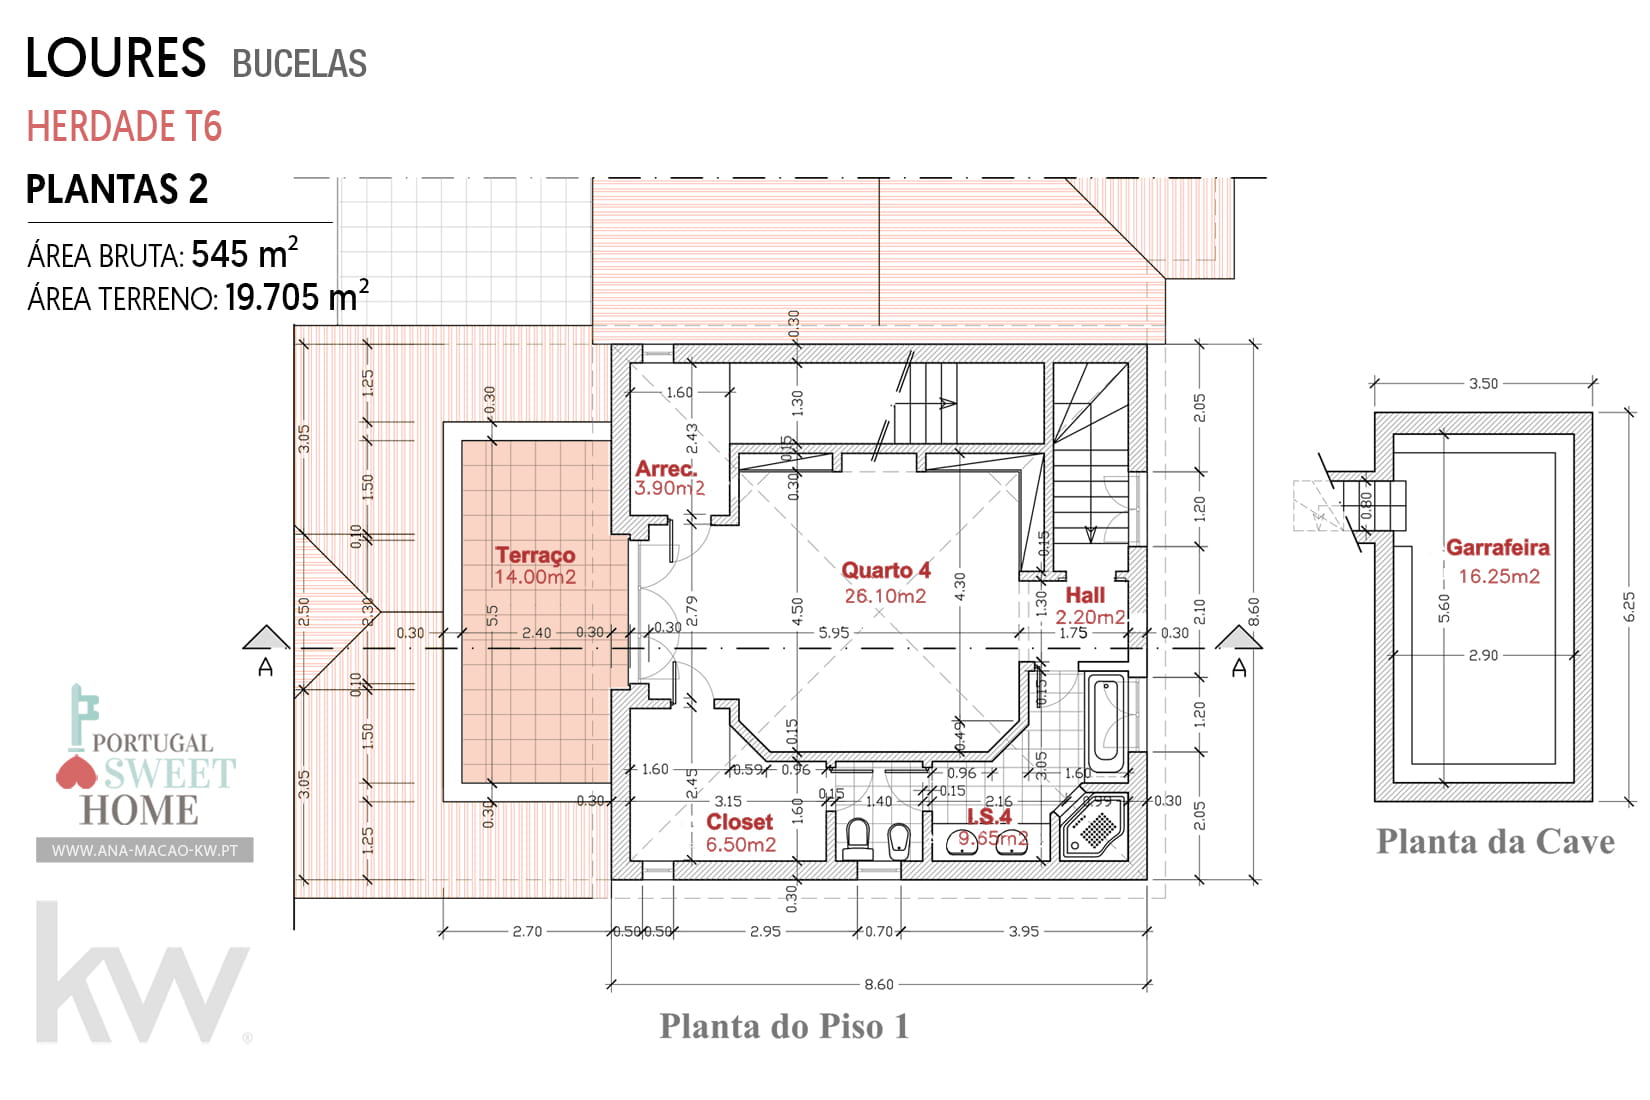 Plan de la maison (étage supérieur et sous-sol)